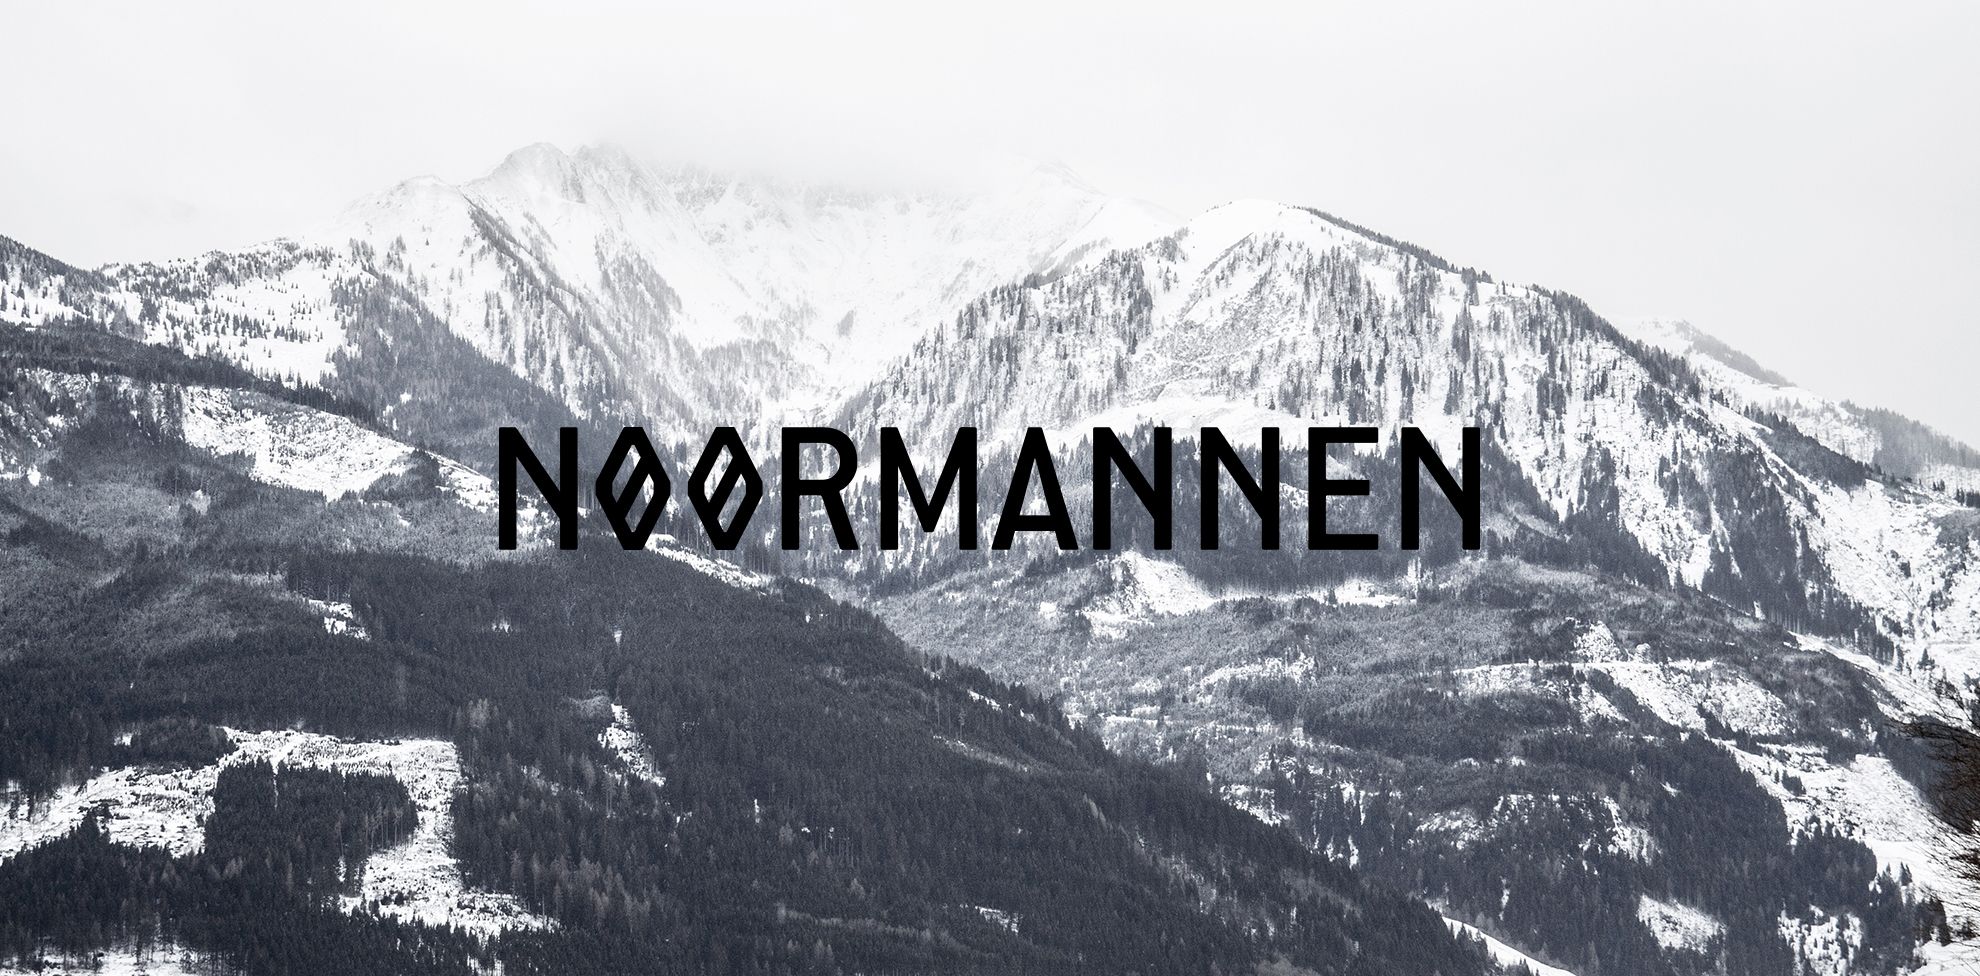 Noormannen logo on mountain background